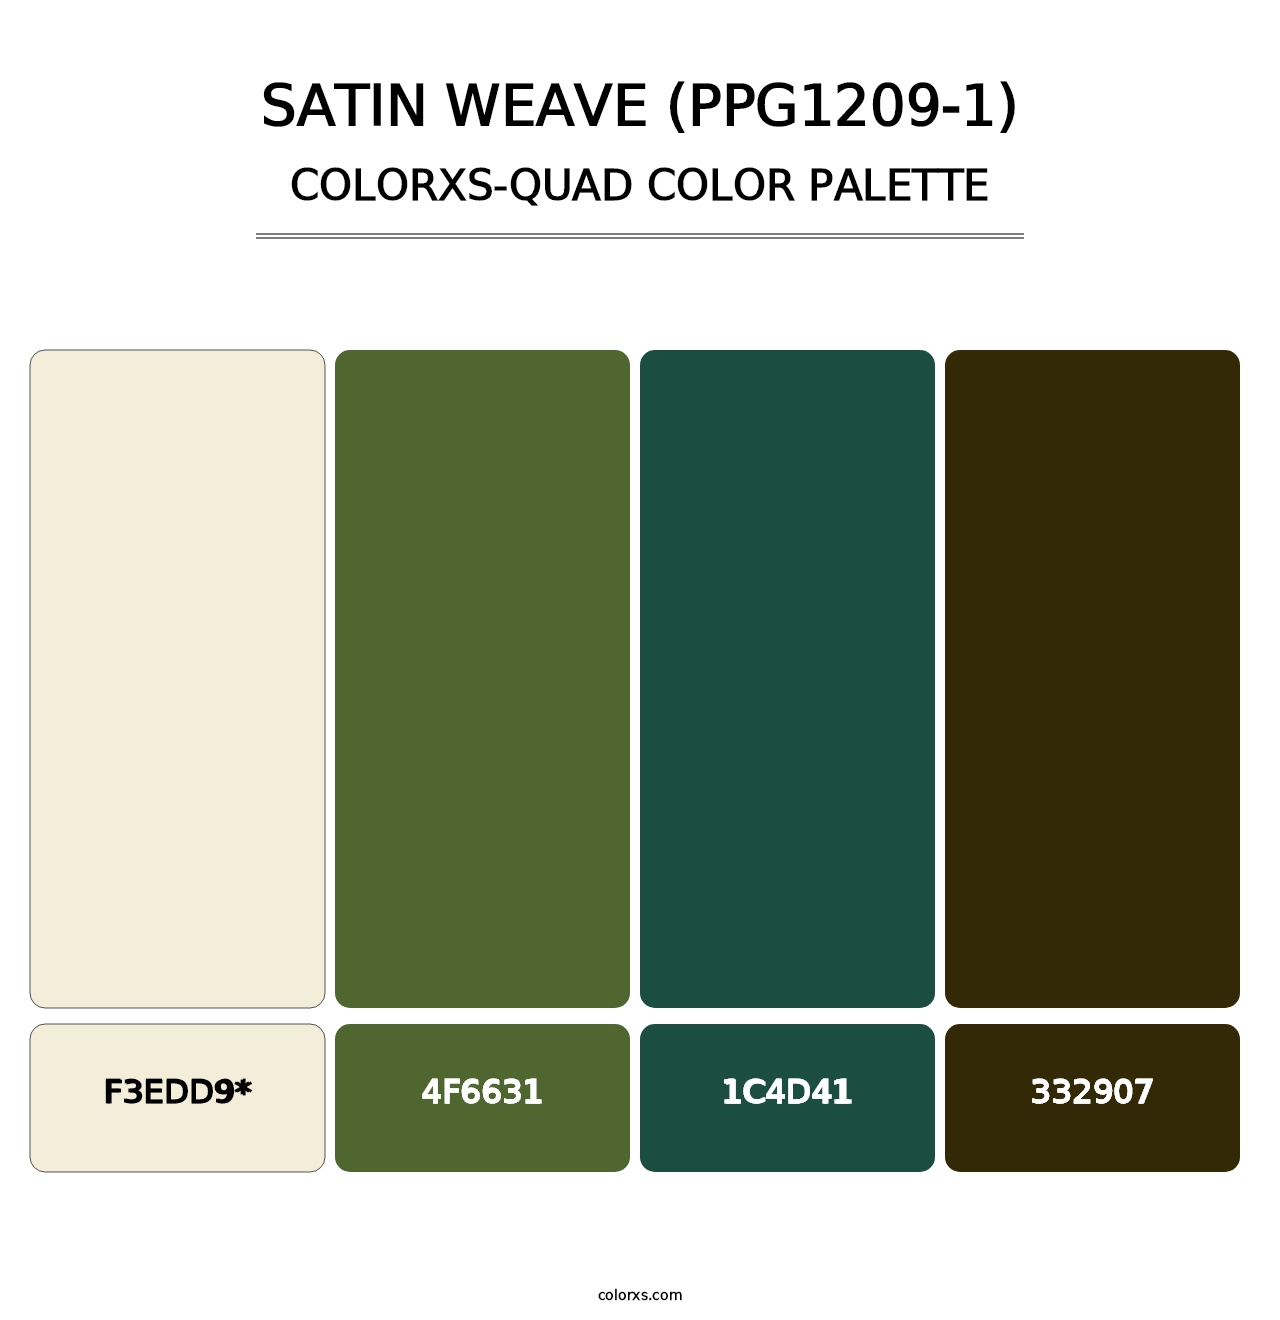 Satin Weave (PPG1209-1) - Colorxs Quad Palette